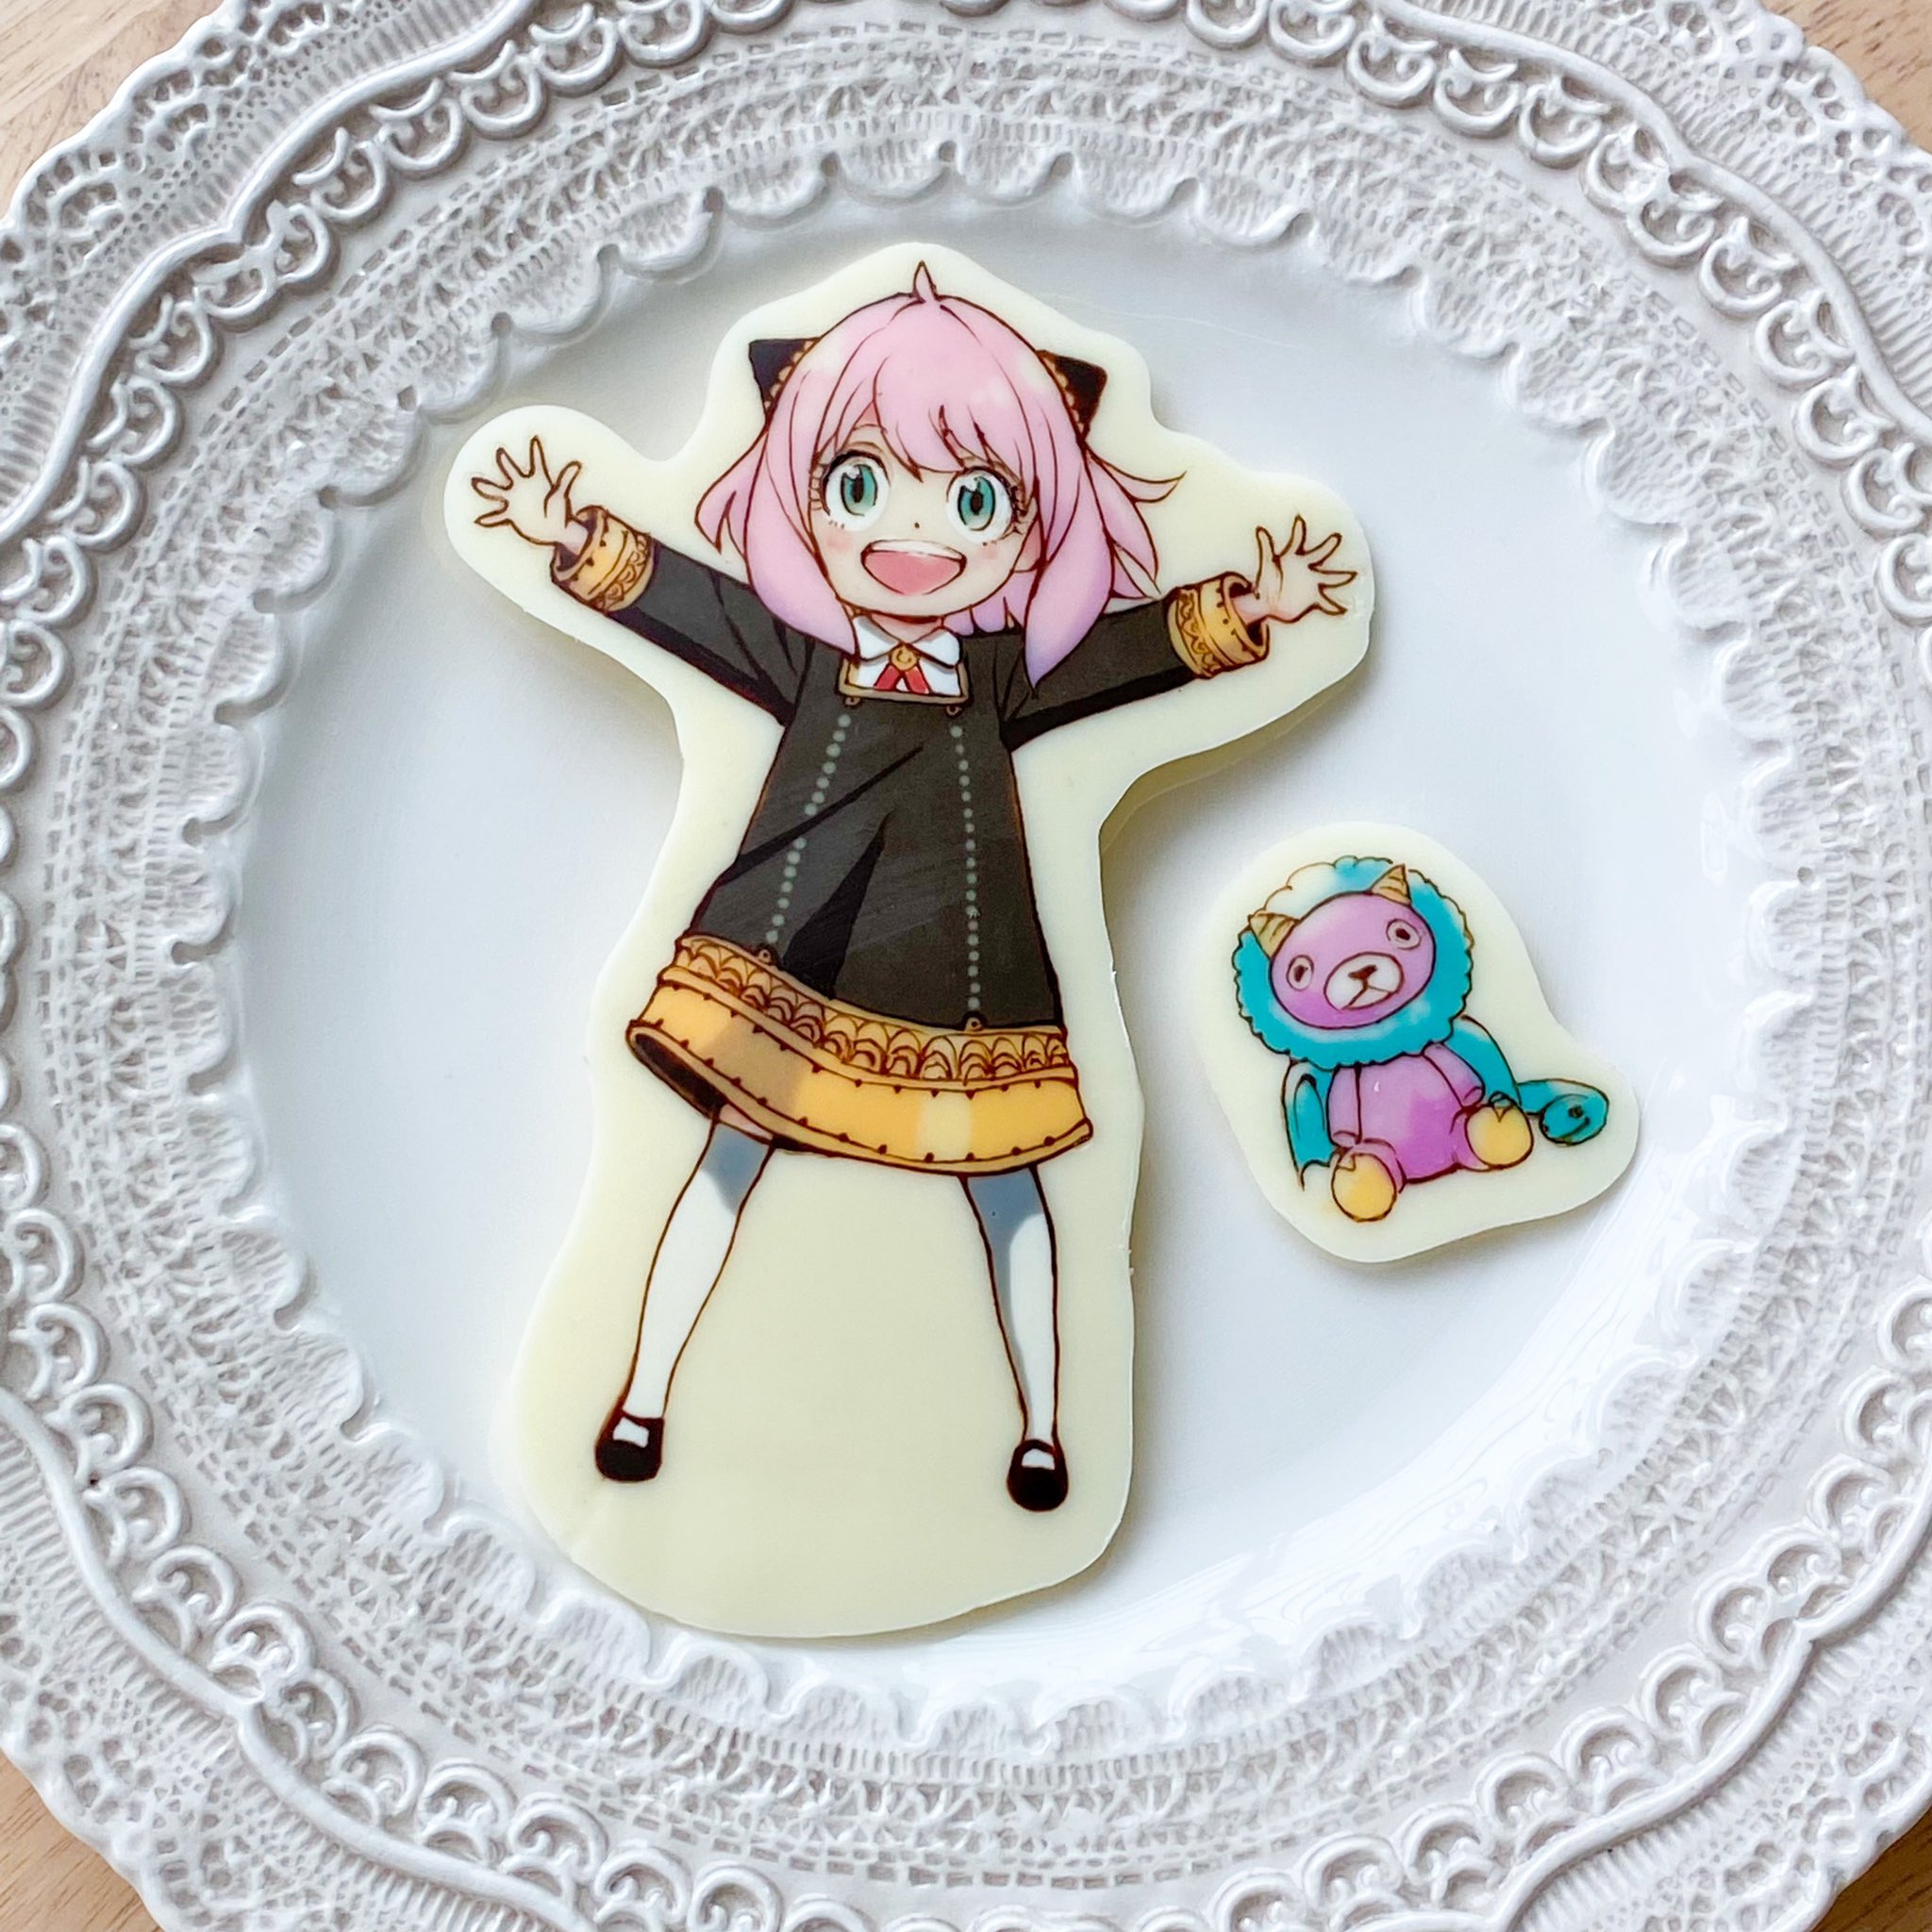 Sweets Atelier Nico 長女の誕生日ケーキ用に作ったアーニャのチョコプレート T Co Ismcijdgqv Twitter